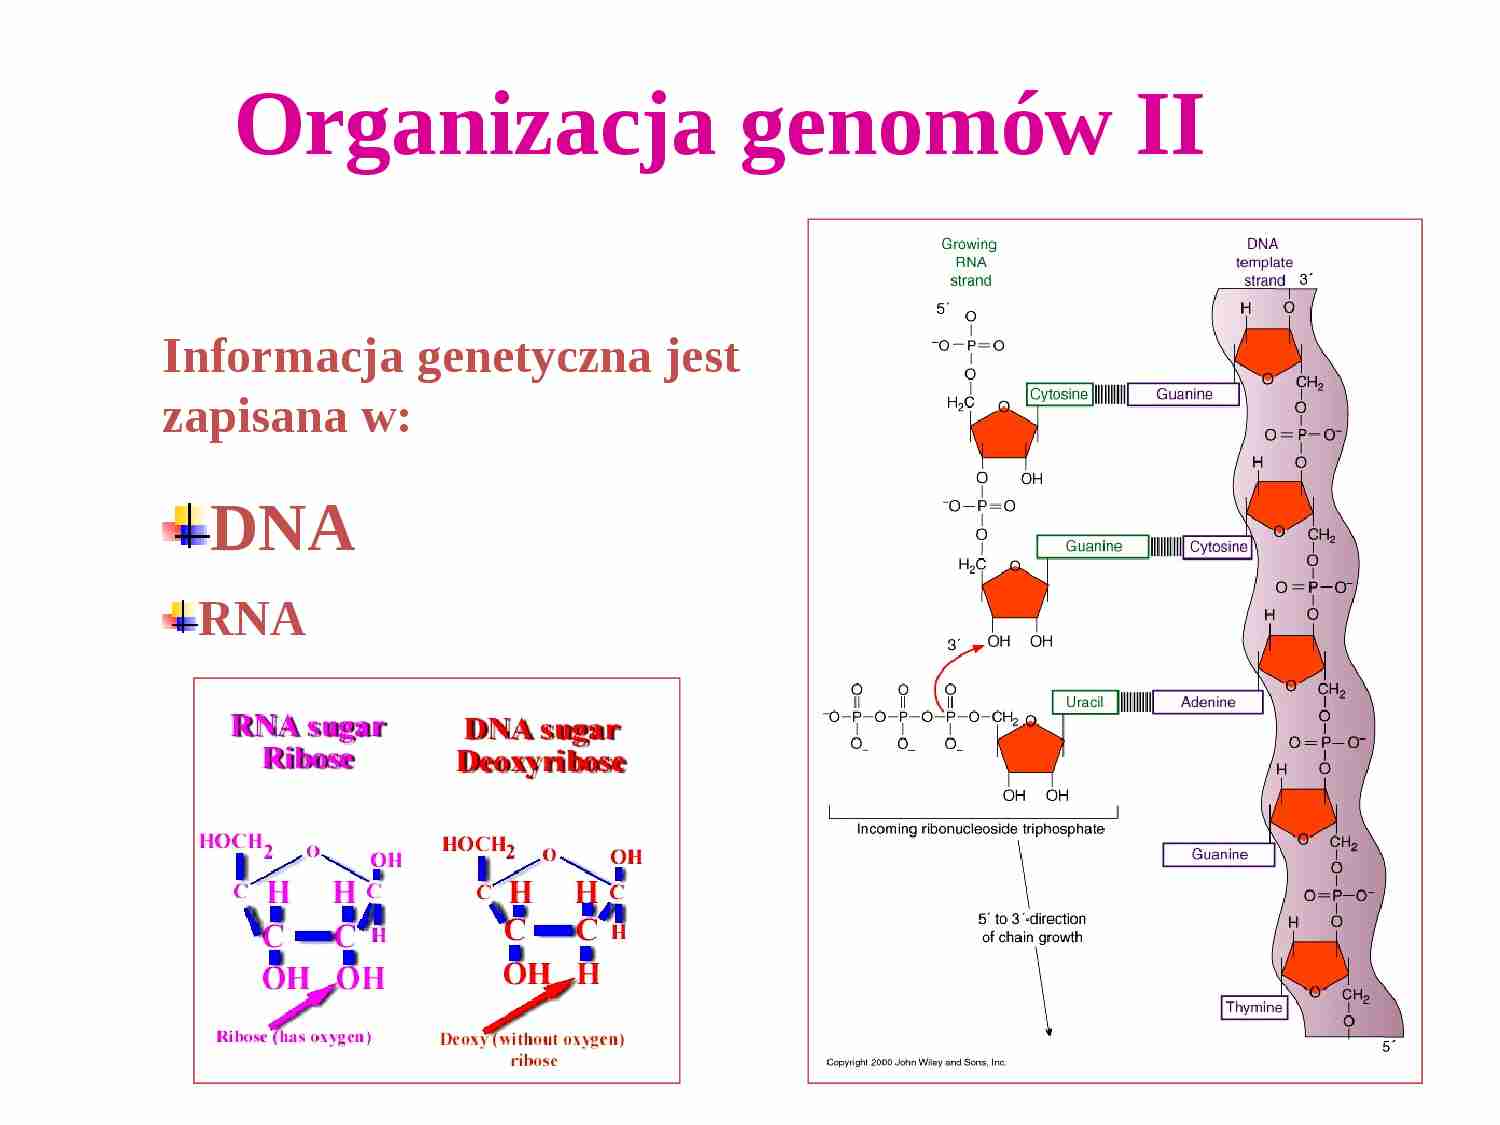 Organizacja genomów II - strona 1